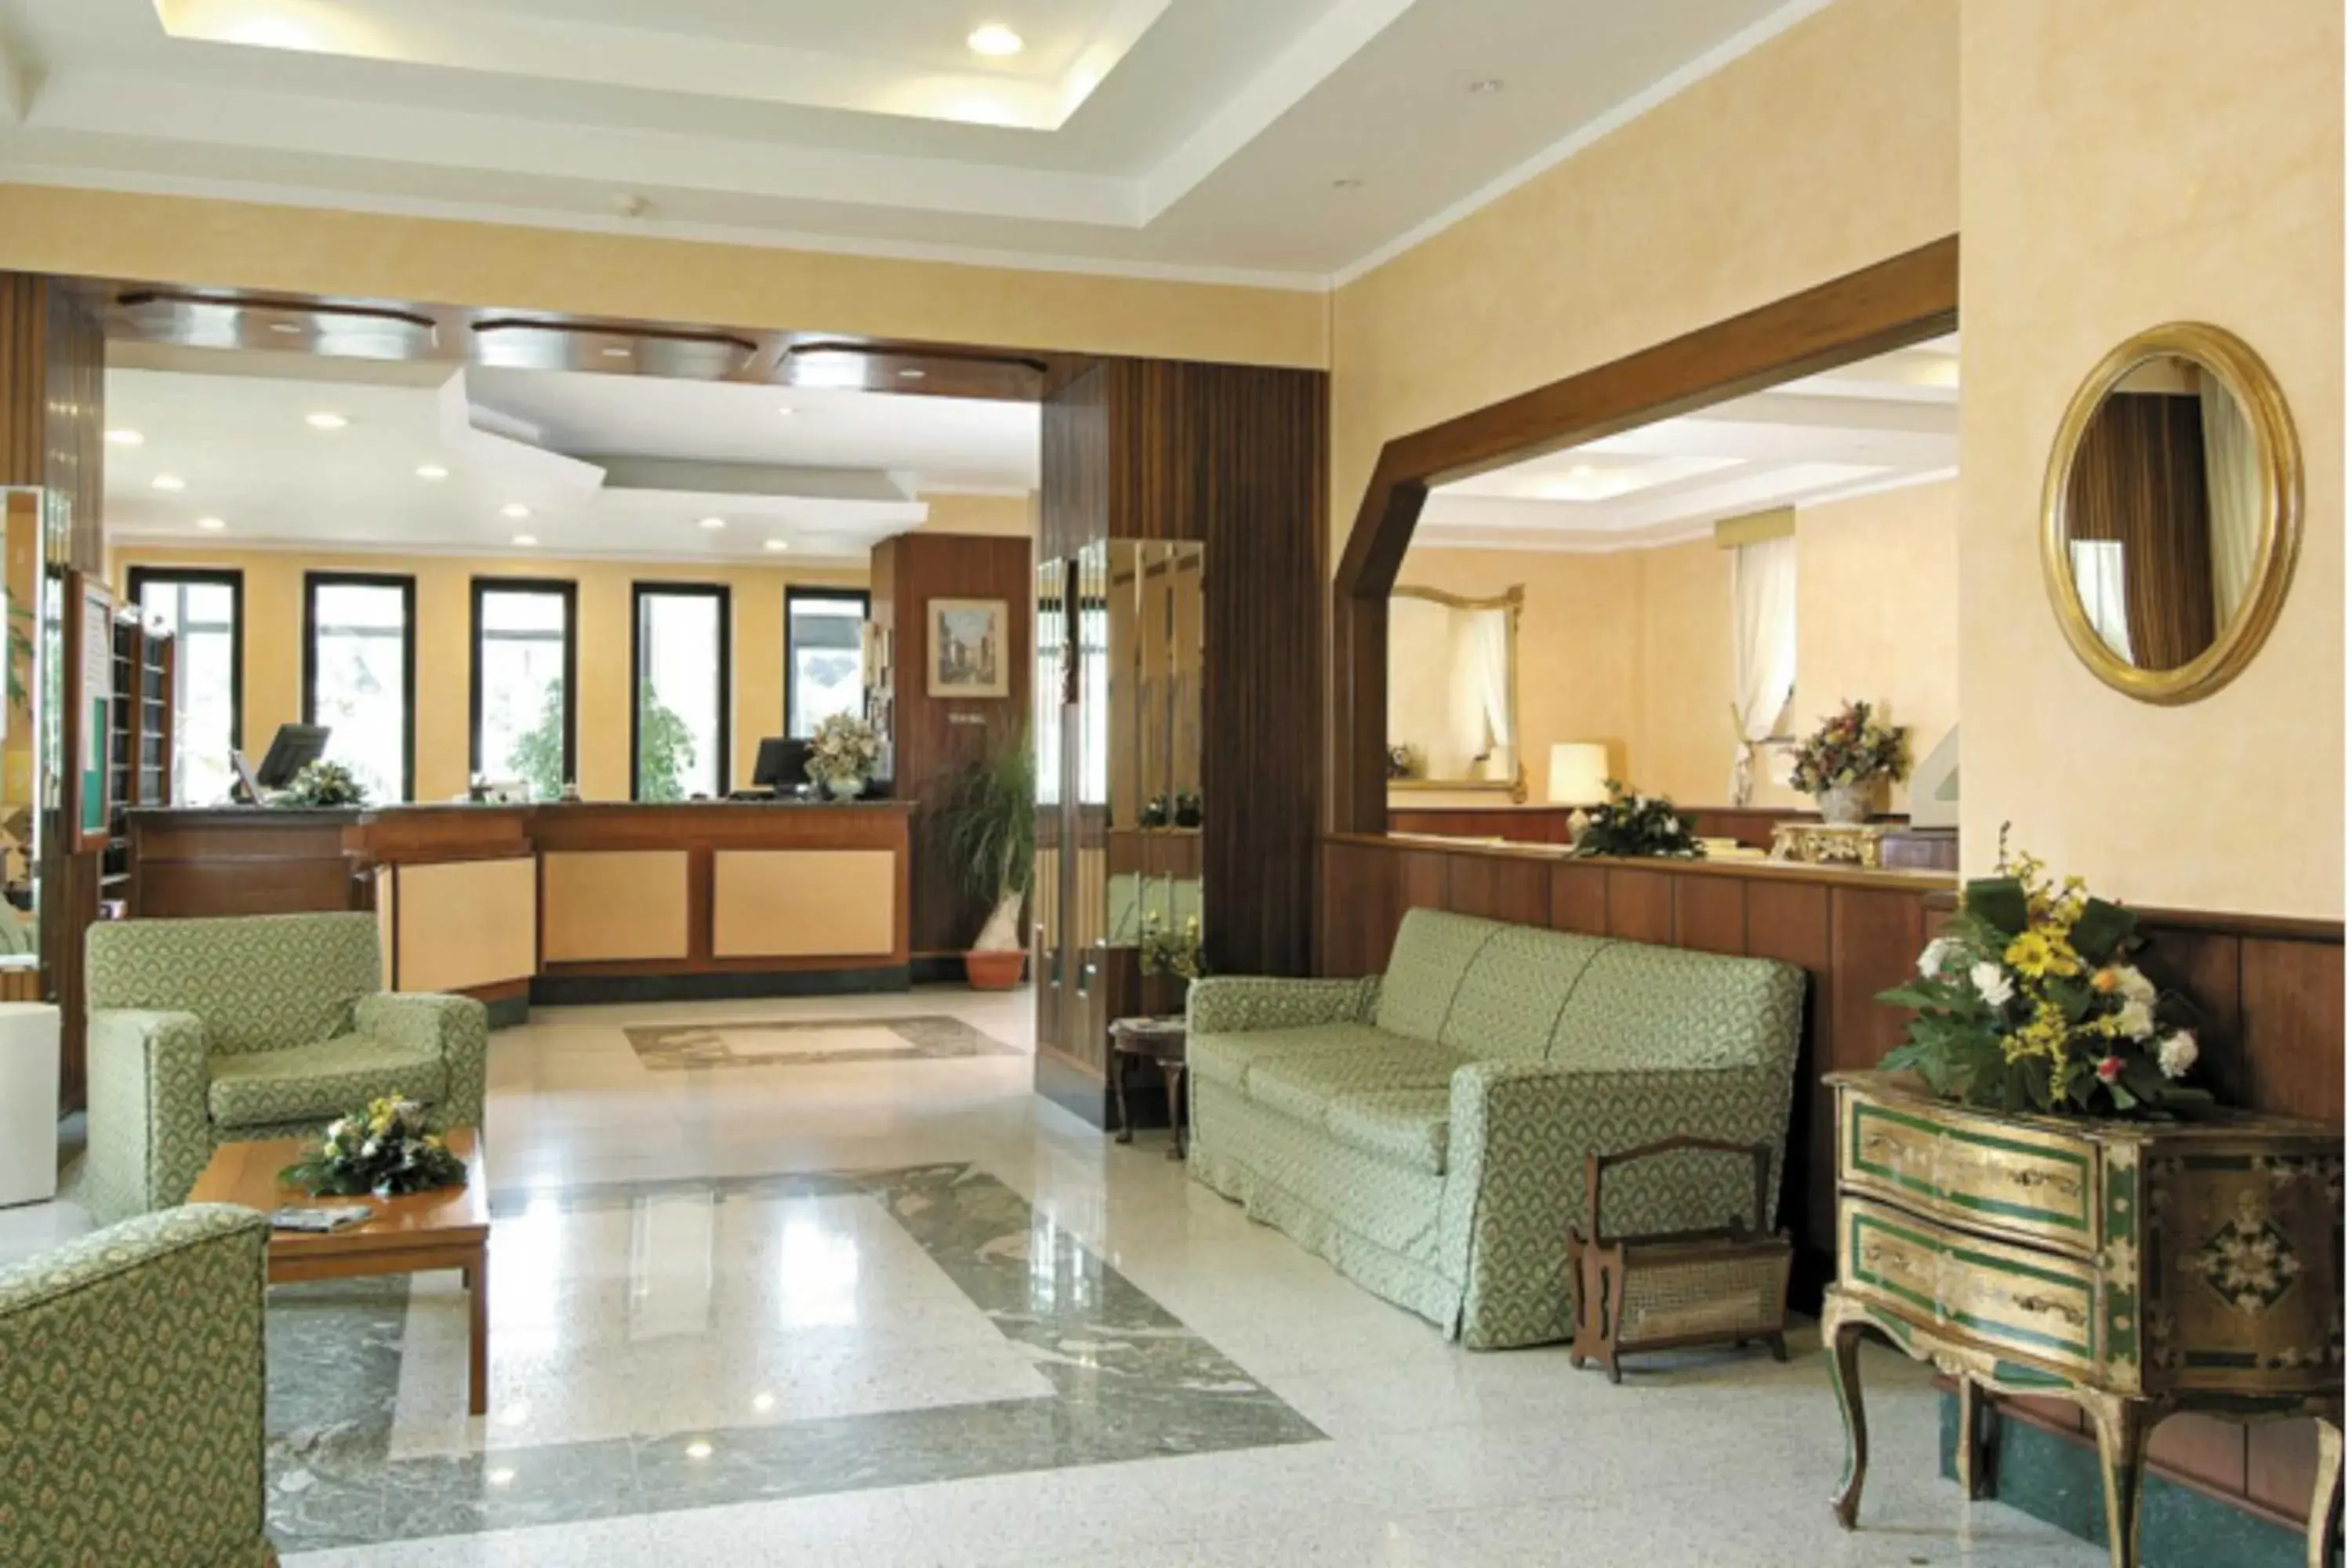 Lobby or reception, Lobby/Reception in American Hotel